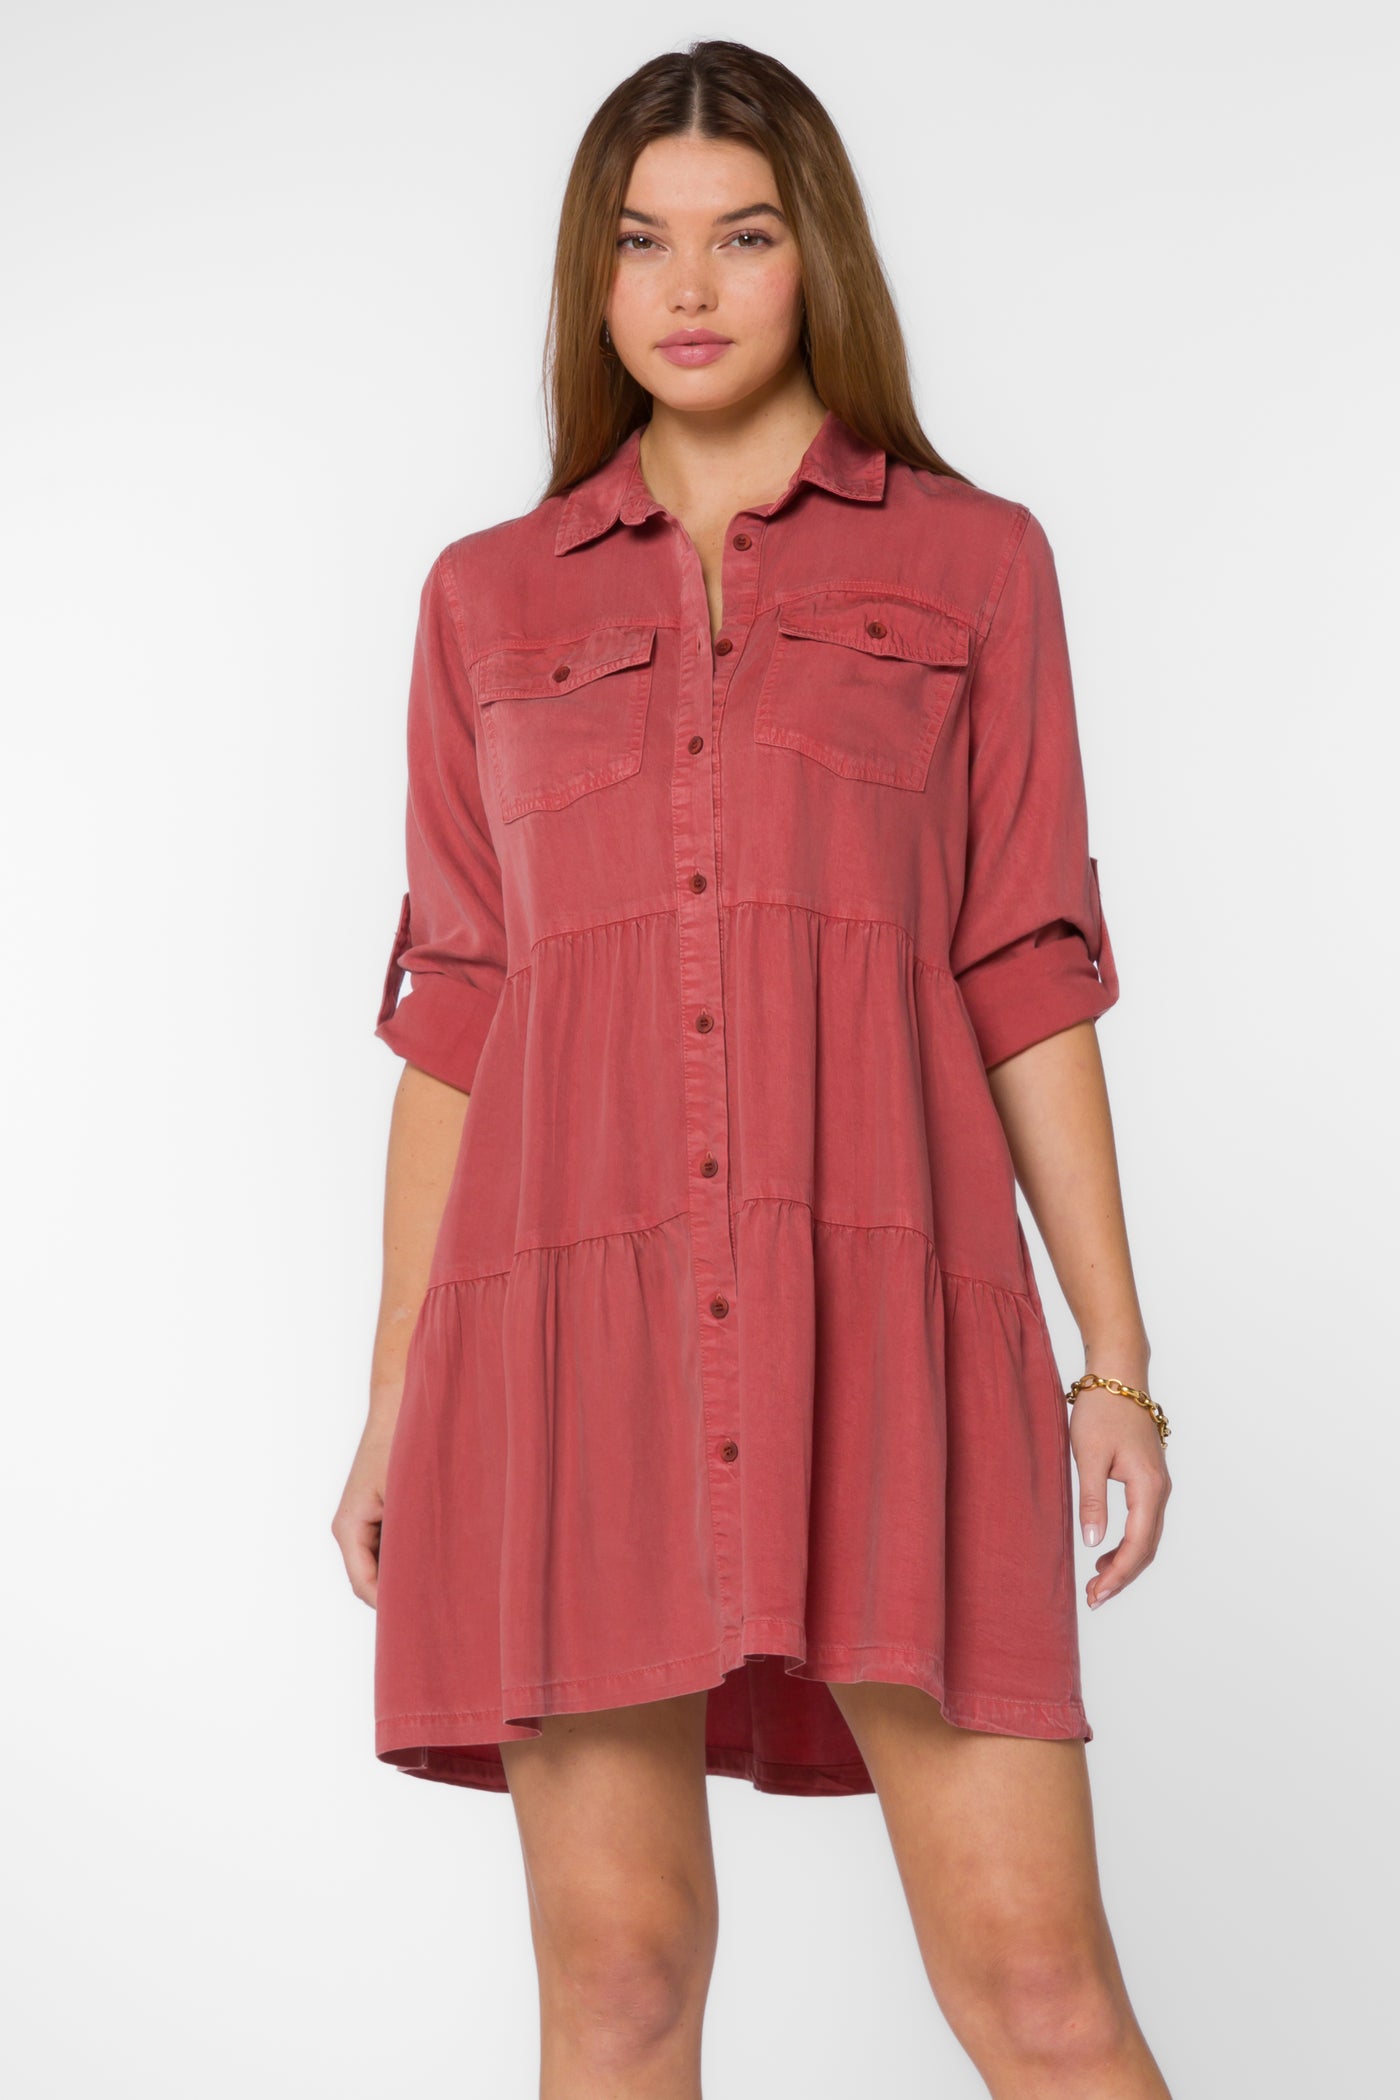 Bree Red Clay Dress - Dresses - Velvet Heart Clothing